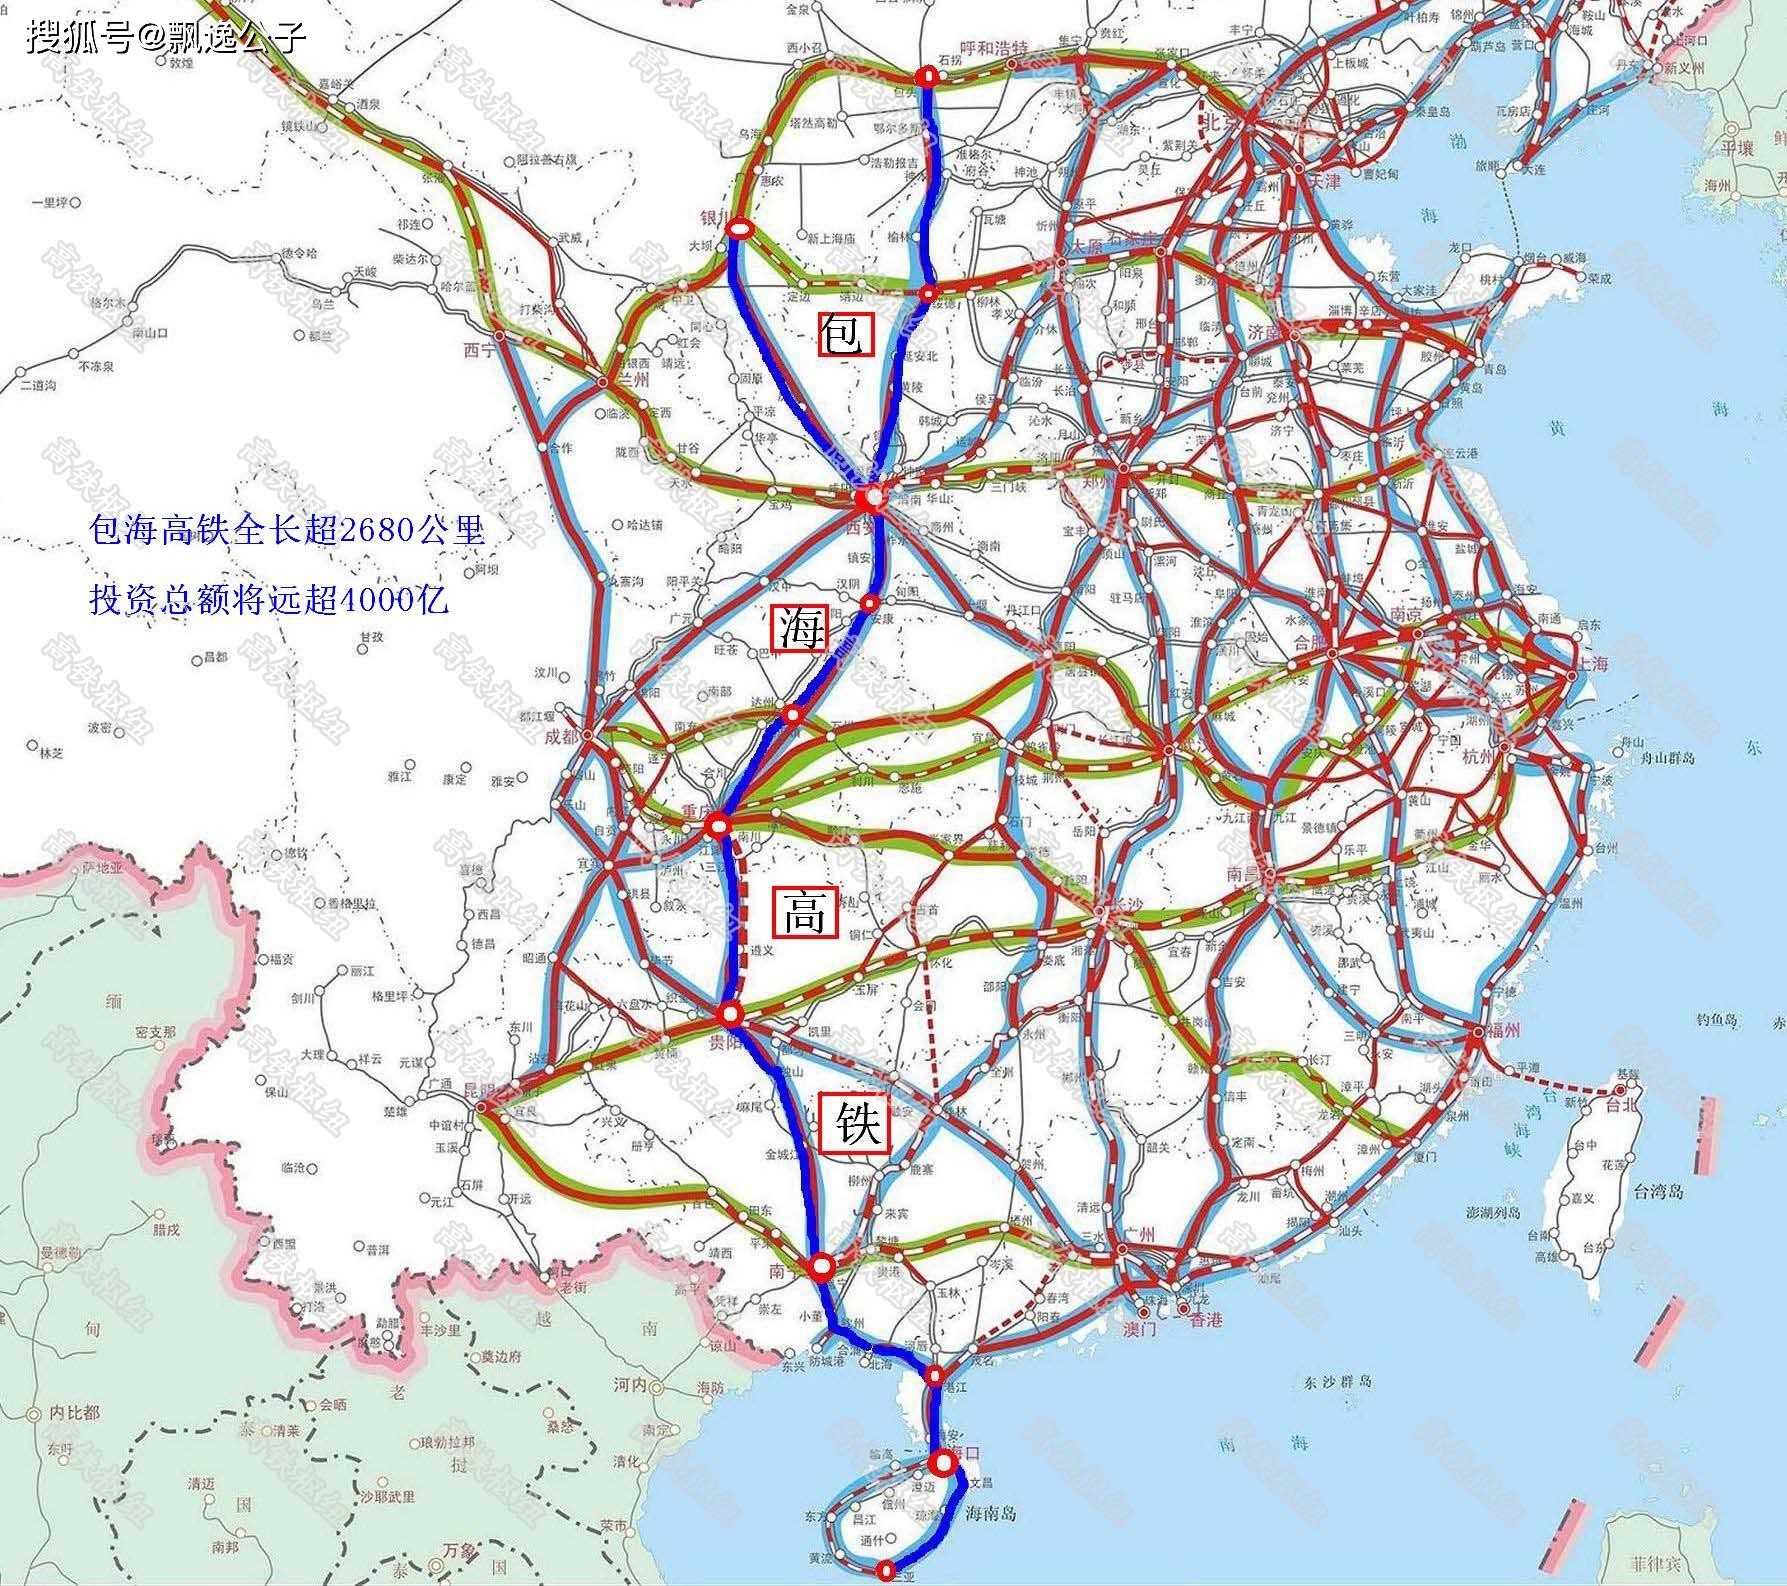 原创包海高铁一线串起西安重庆贵阳南宁海口五大省会城市